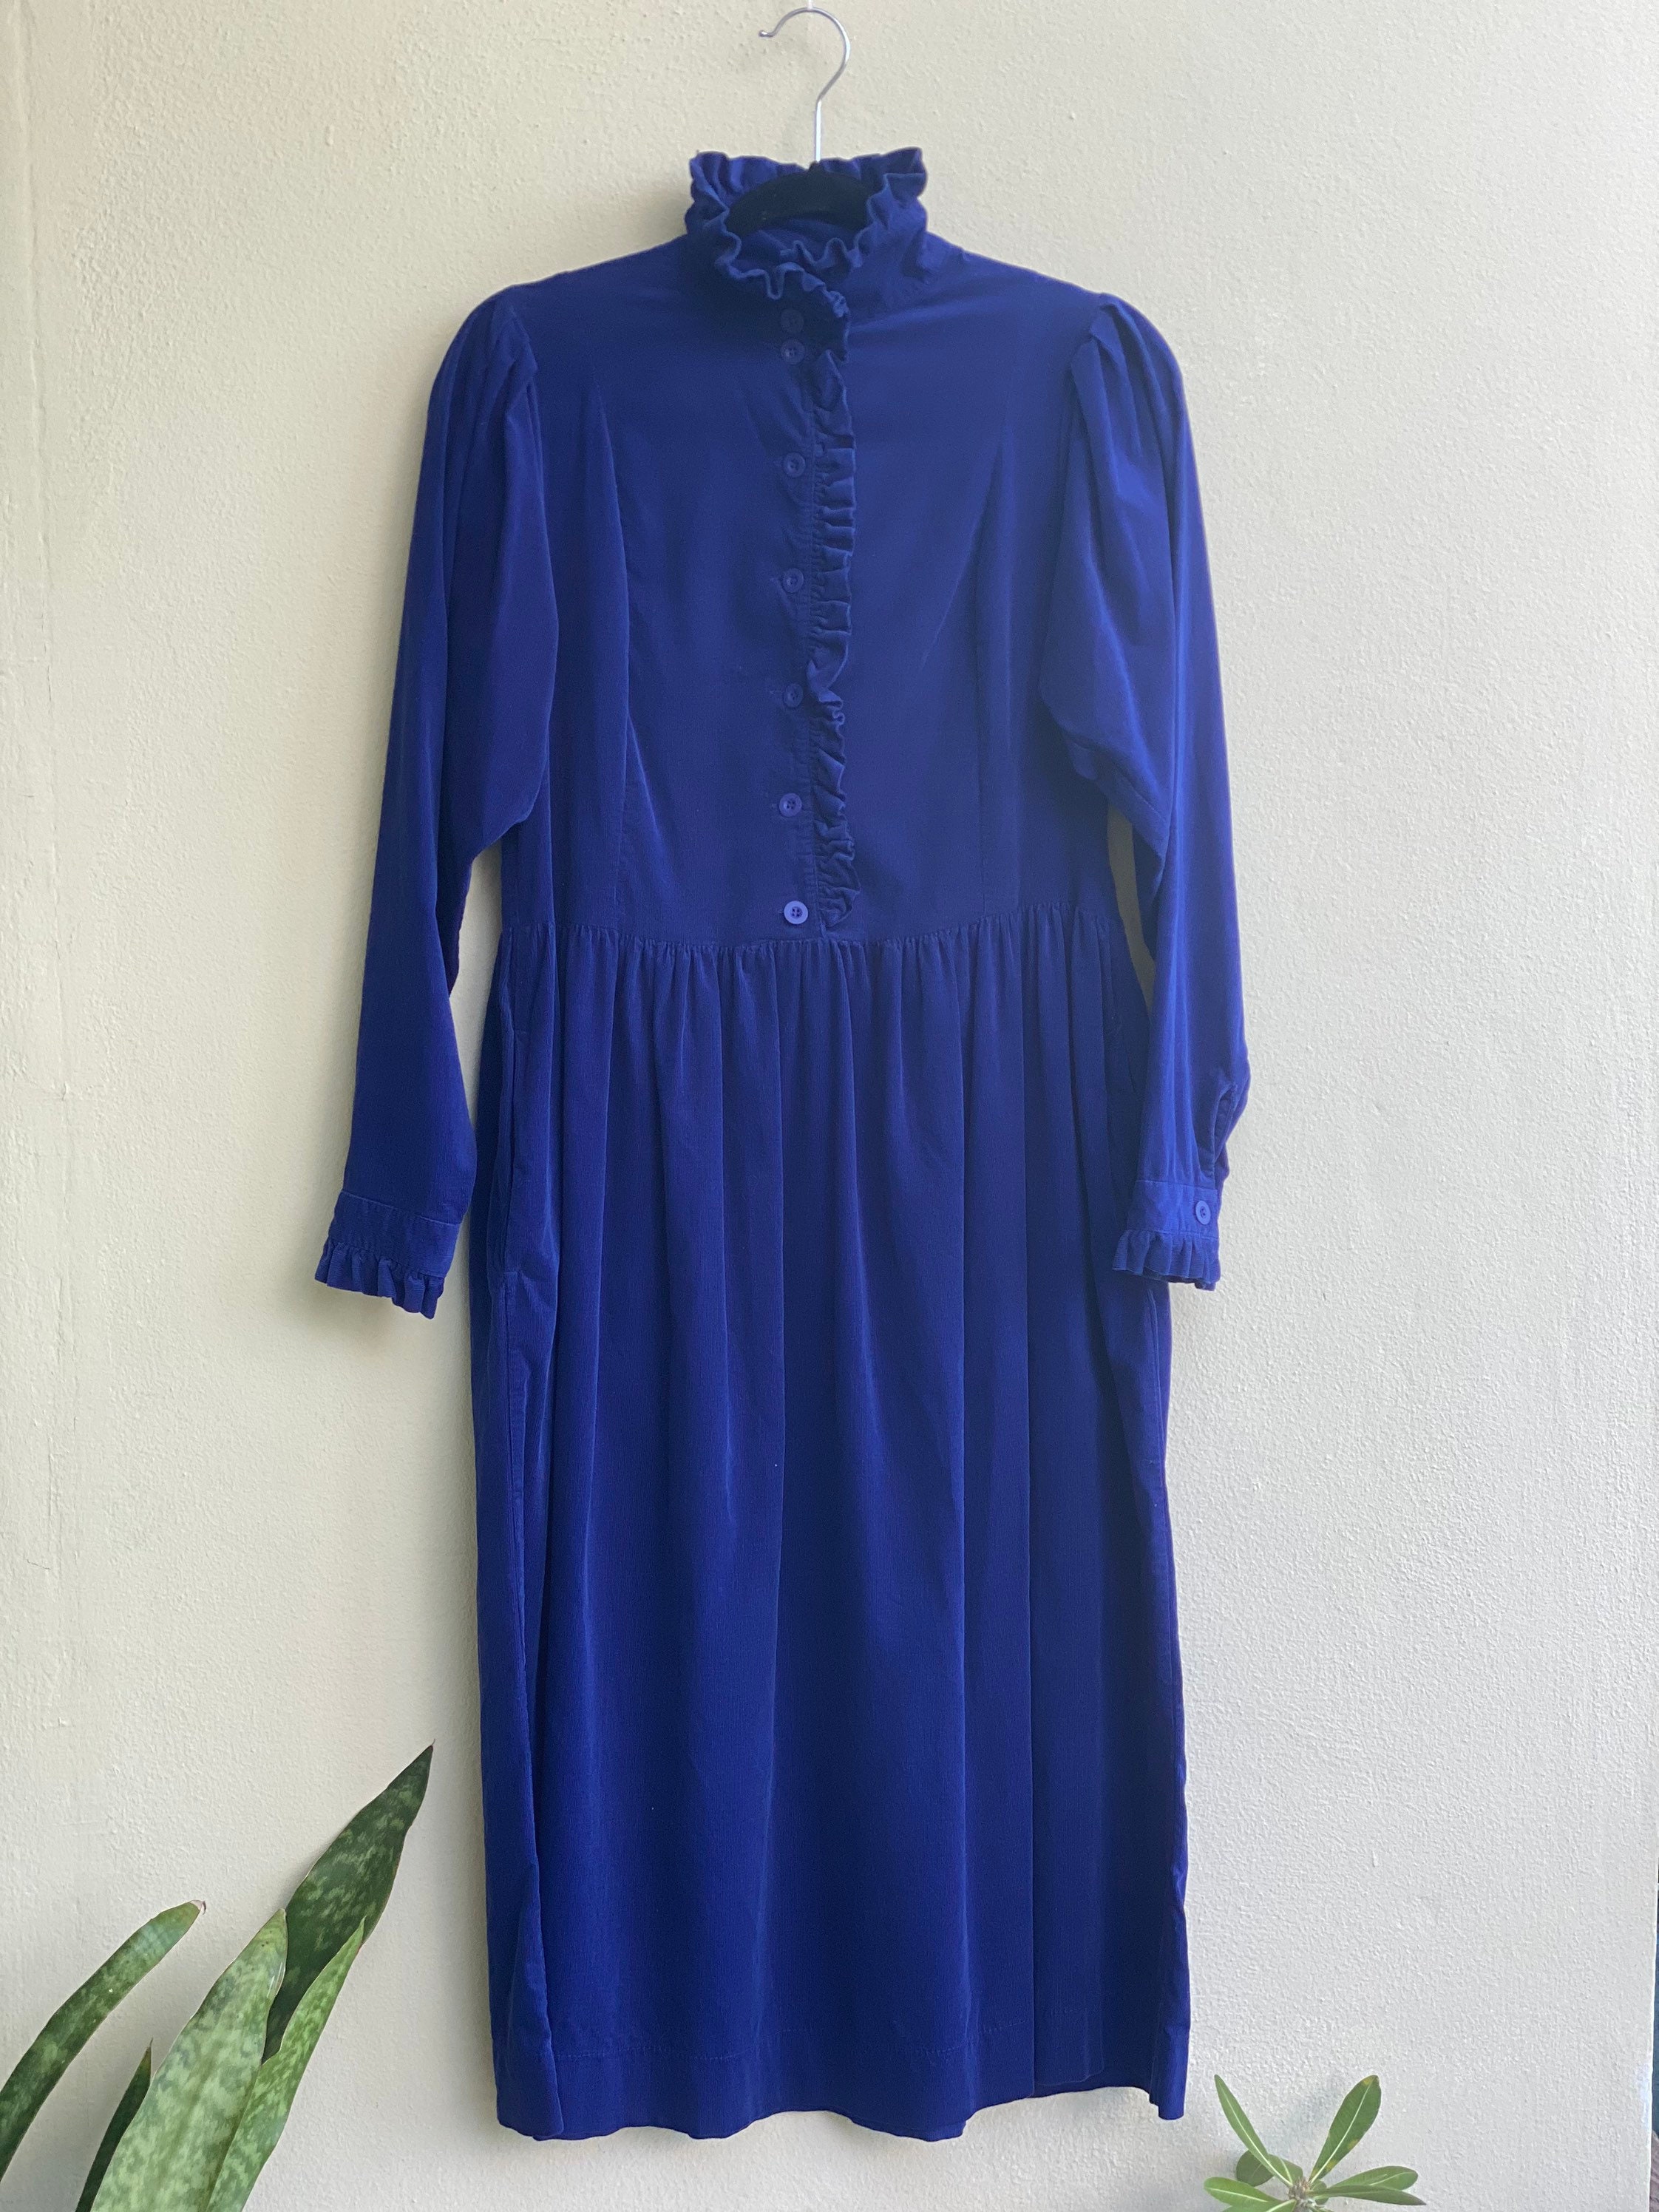 Vintage High Neckline Dress / Laura Ashley Dress / Navy Blue | Etsy